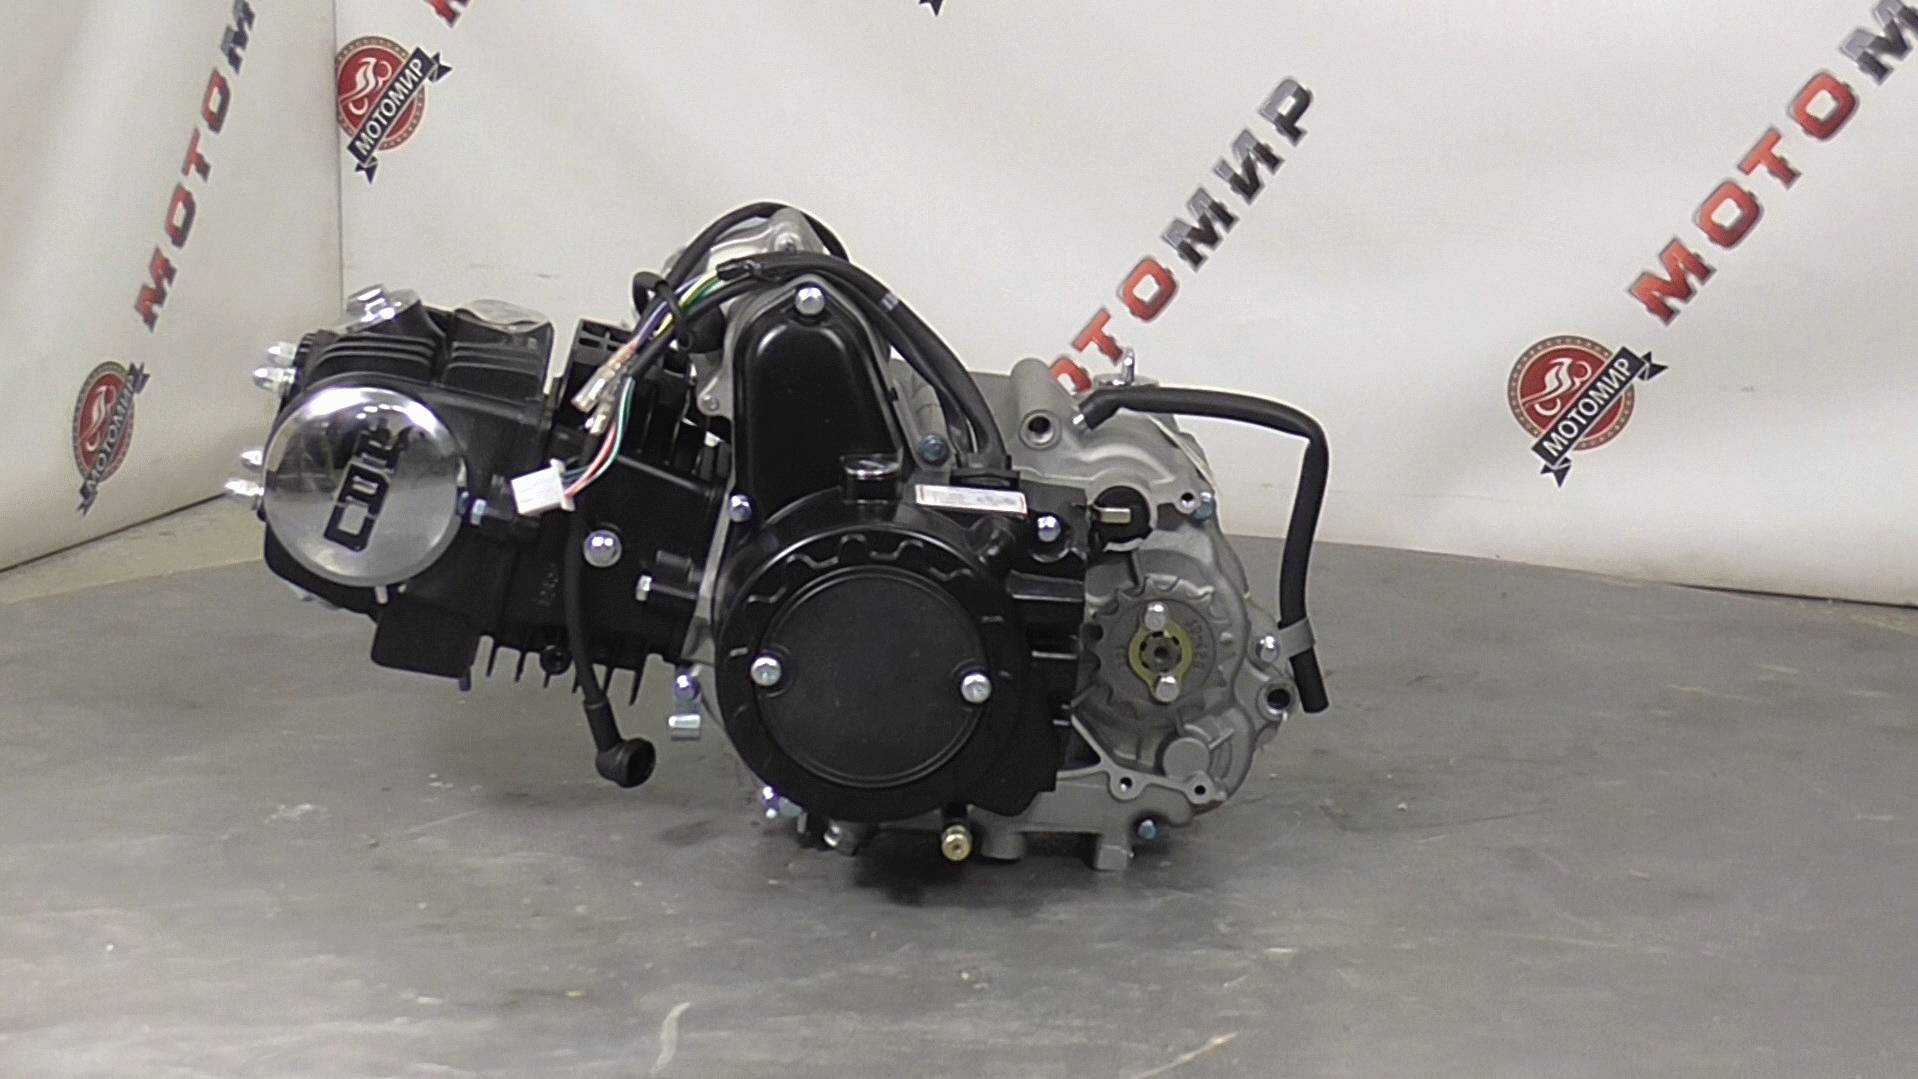 Двигатель 4т. 125 (120) см3 (1P52) Storm (черный) - горизонтальный, тюнинг, круговая КПП